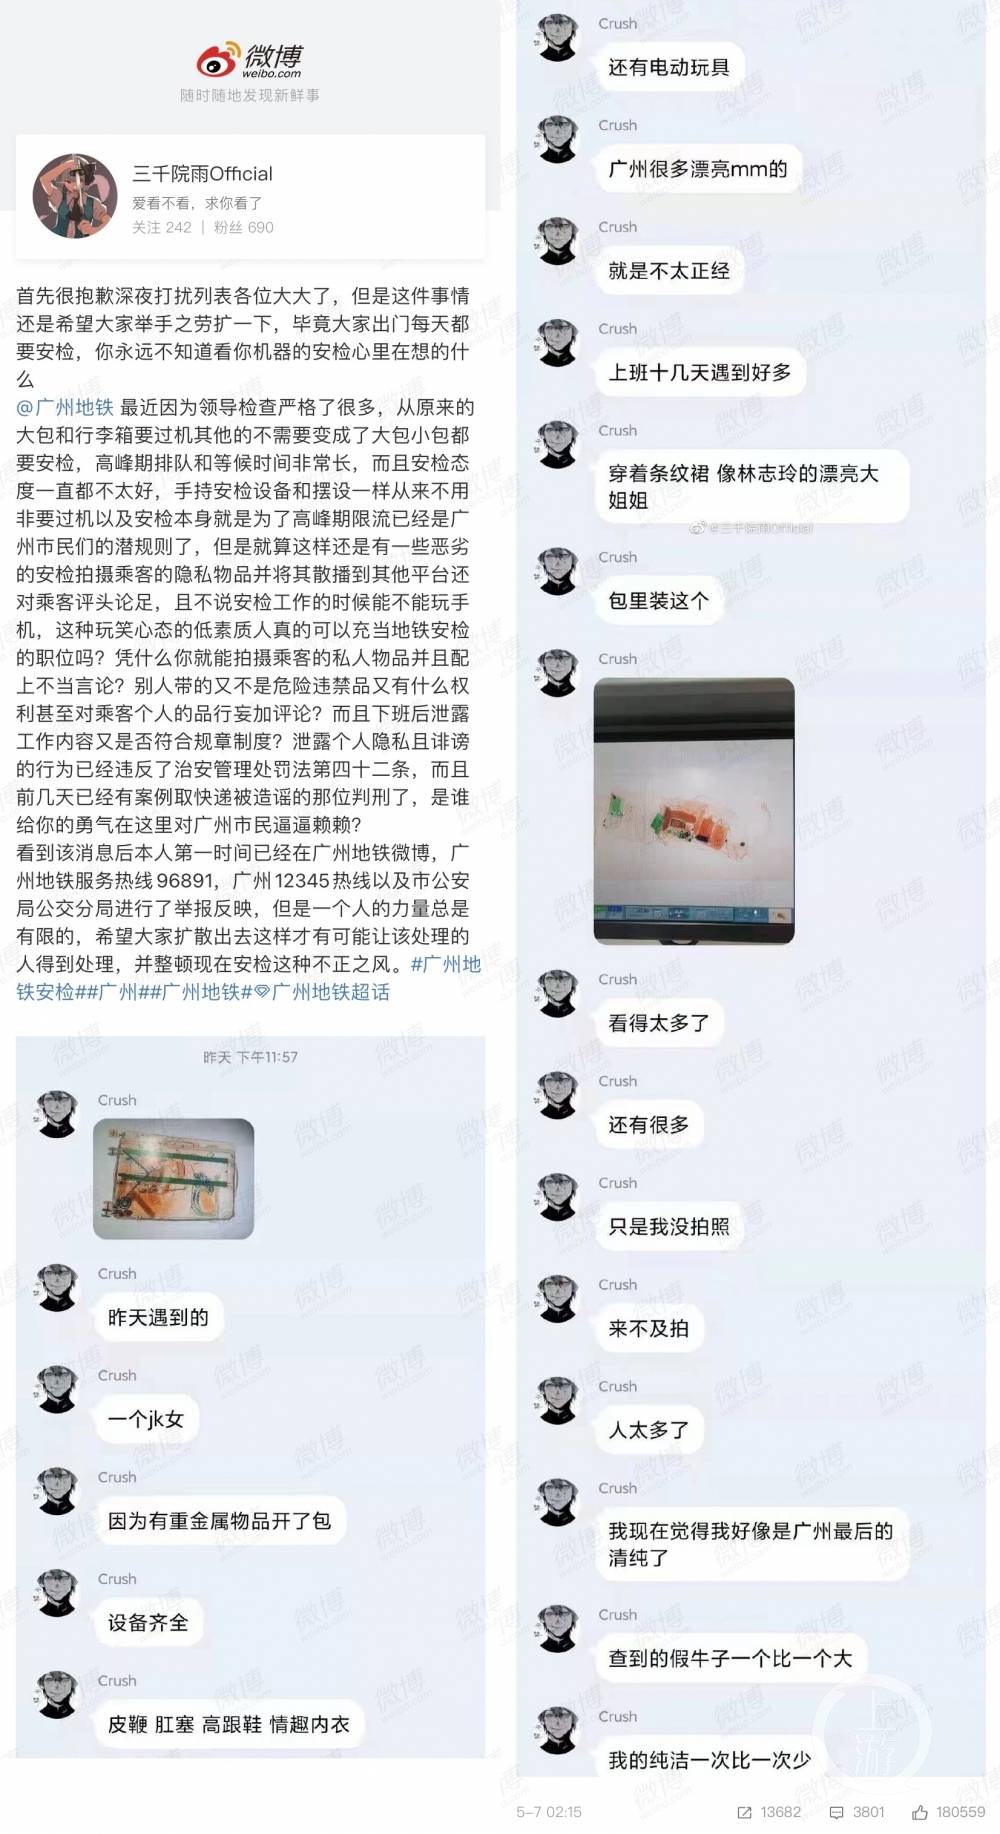 5月7日,微博网友称,广州地铁一名安检员私下散布乘客携带物品的安检